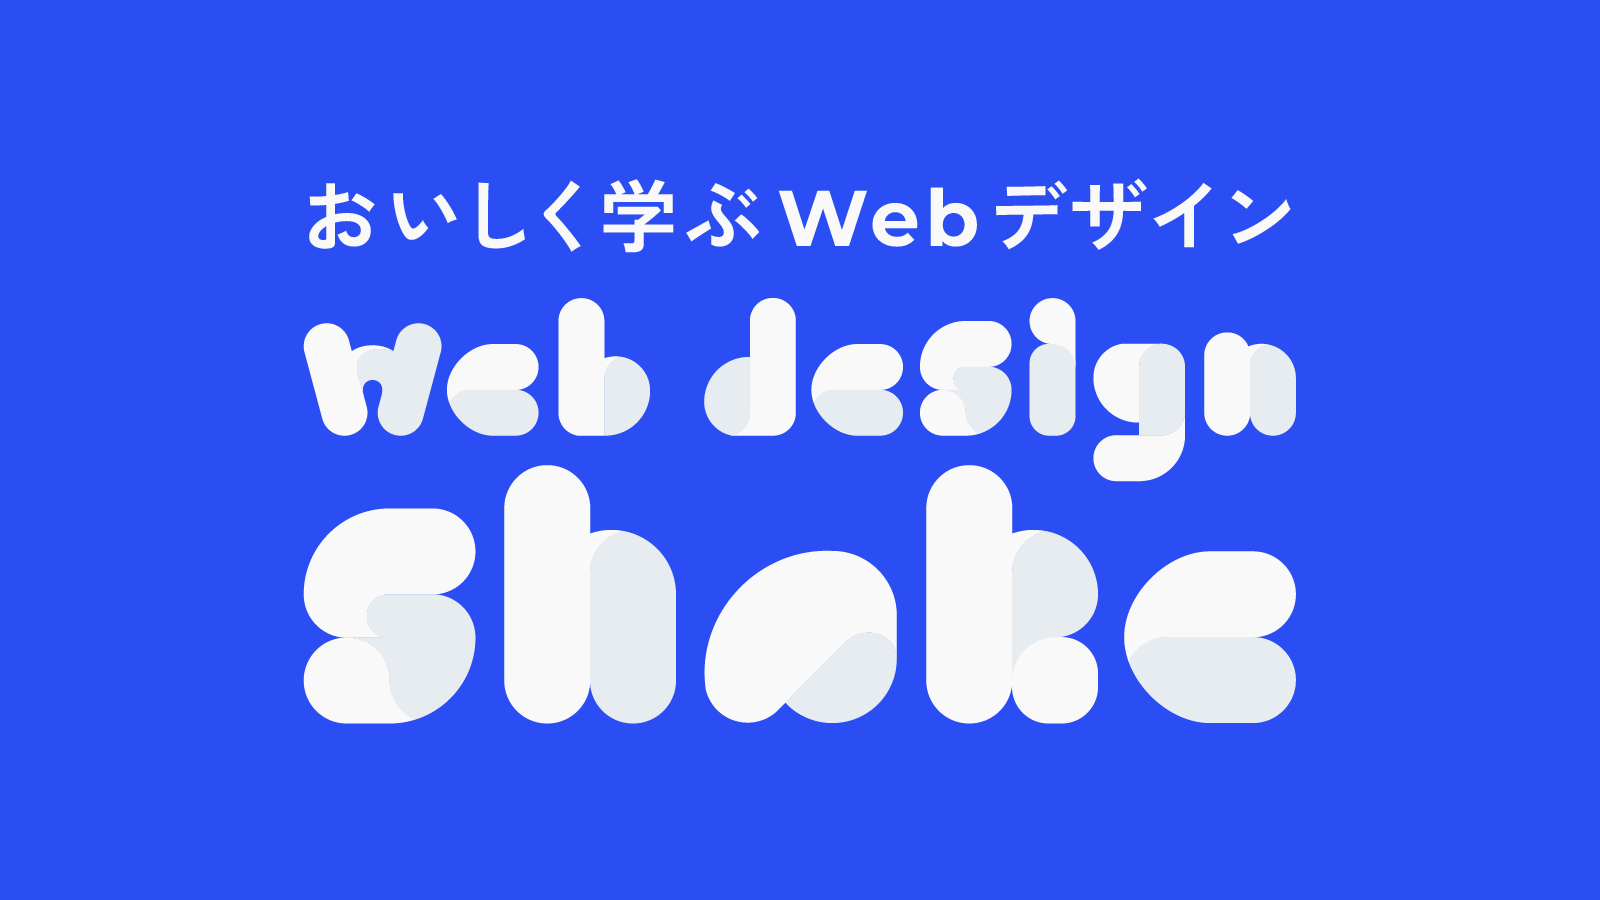 おいしく学ぶWebデザイン web design shake